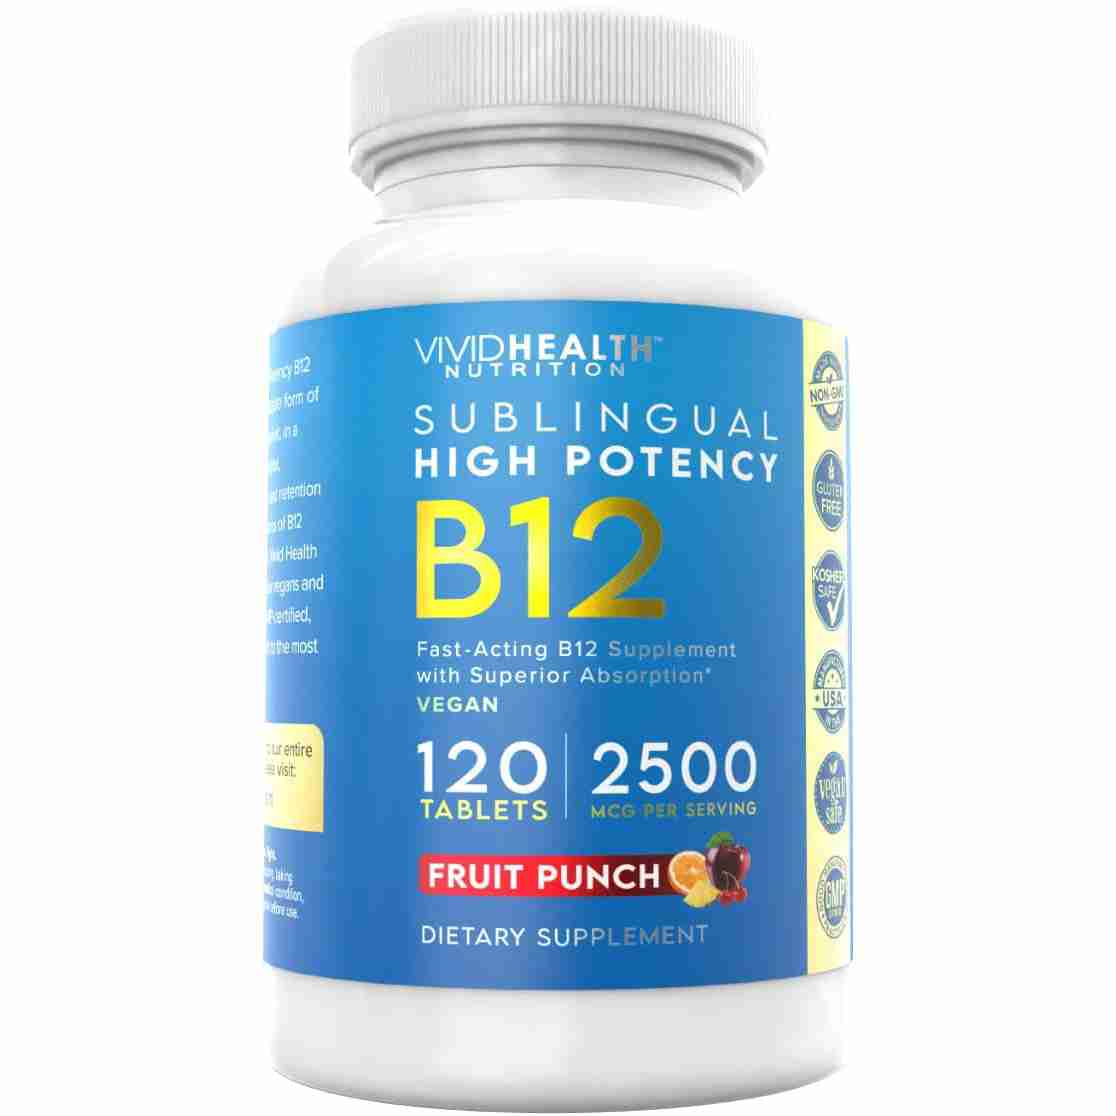 b12-vitamins with cash back rebate